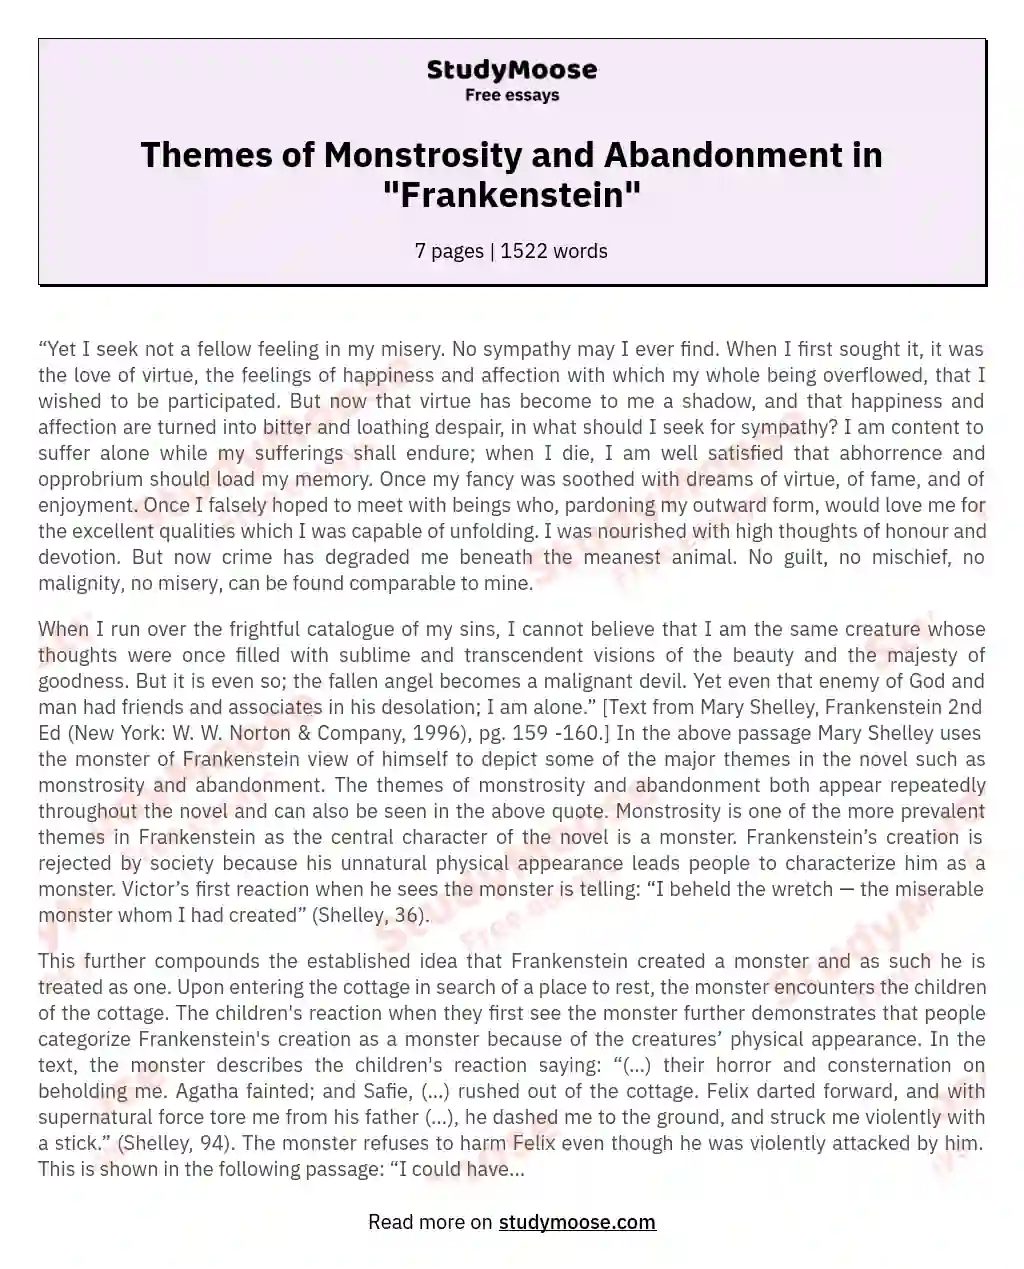 frankenstein monstrosity essay